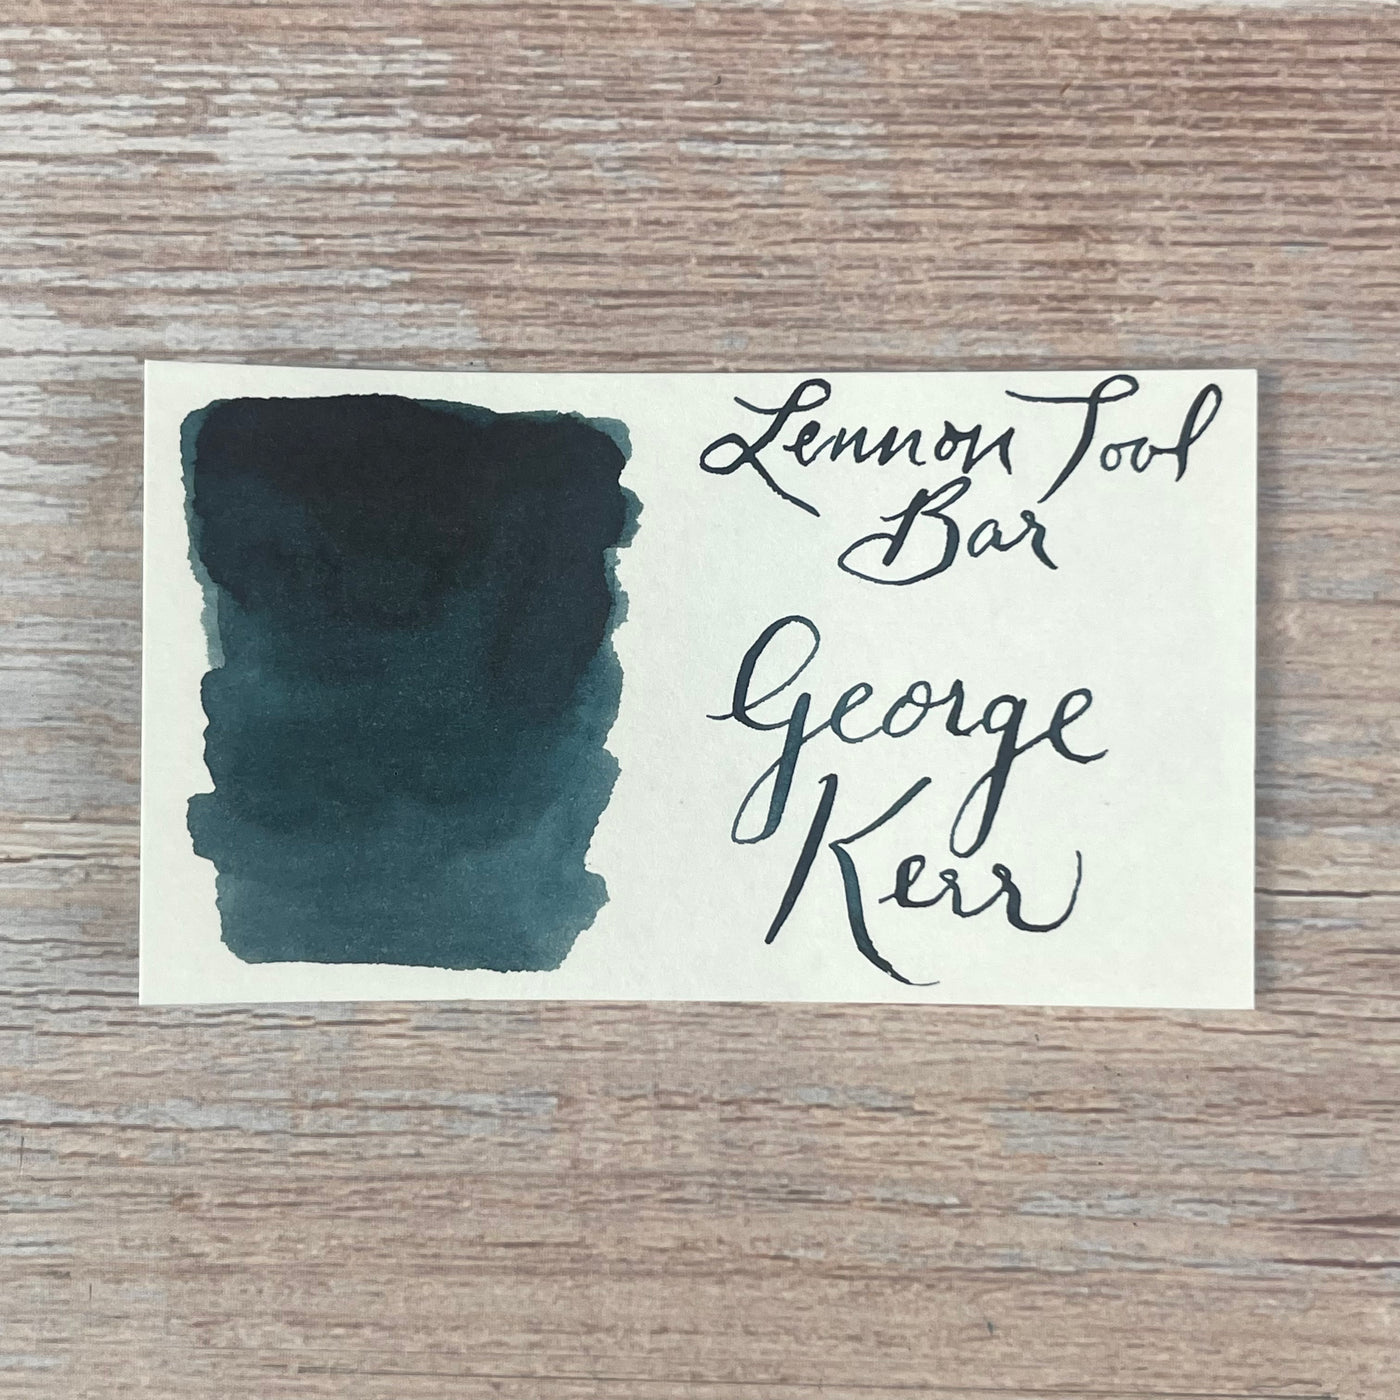 Lennon Tool Bar George Kerr - 30ml Bottled Ink